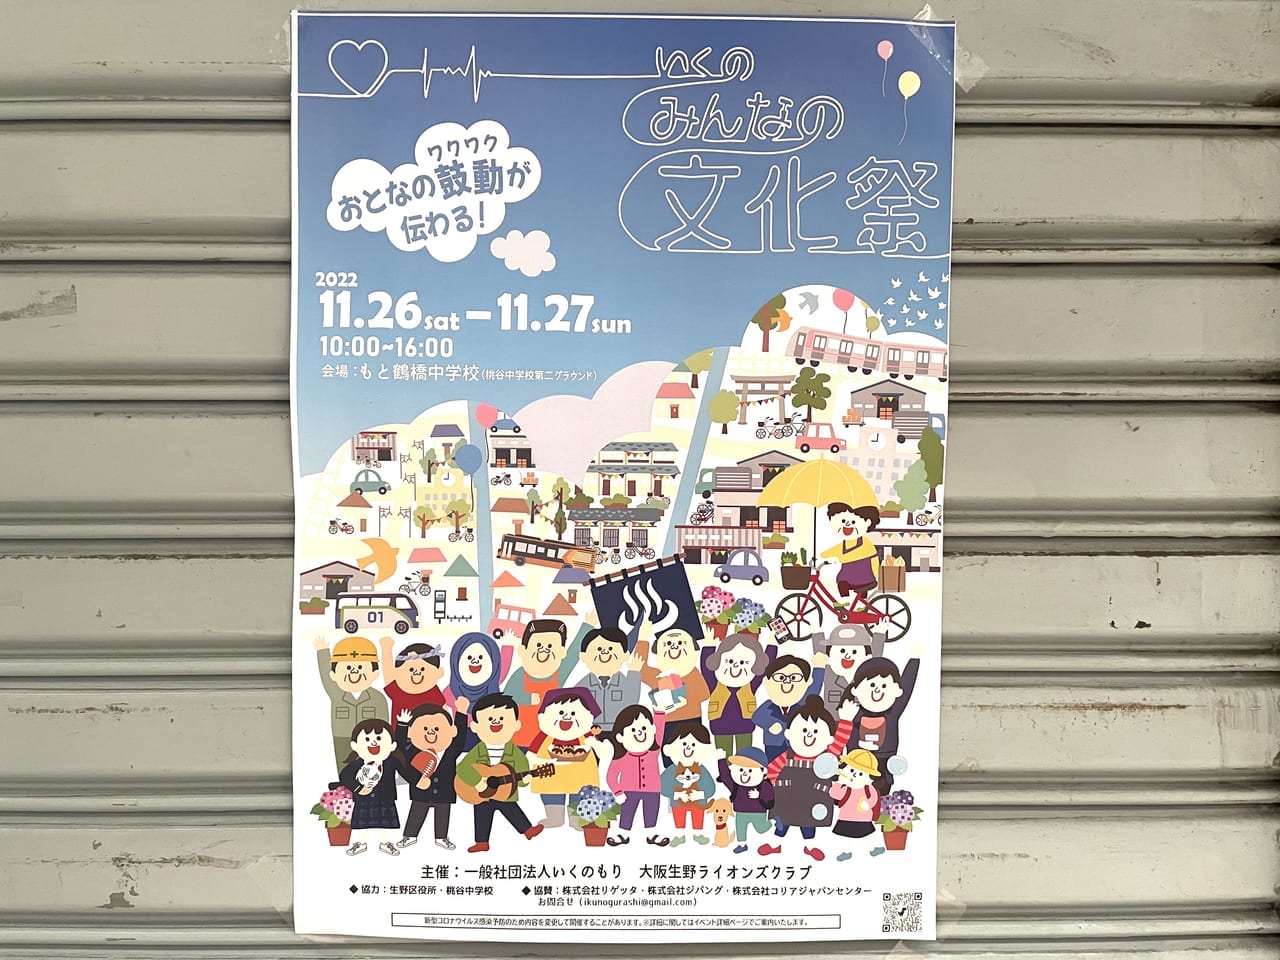 もと鶴橋中学校で開催されるいくのみんなの文化祭2022